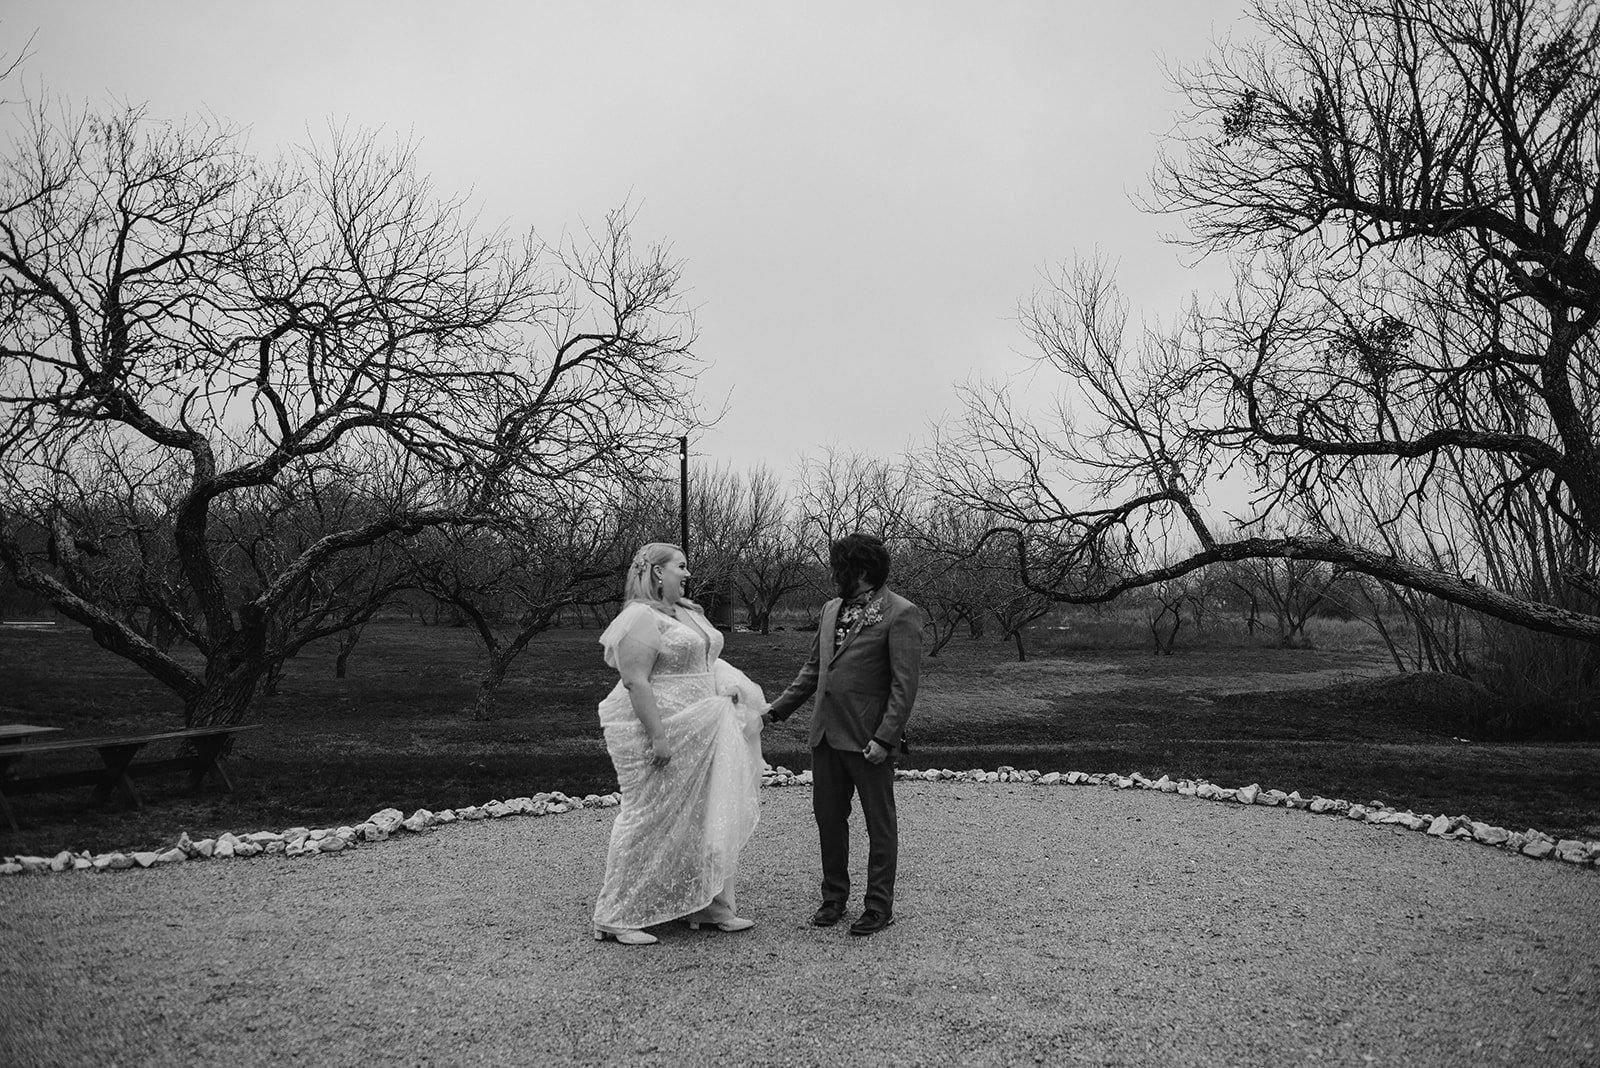 VIBRANT WEDDING DAY AT CAMINO REAL RANCH, TX